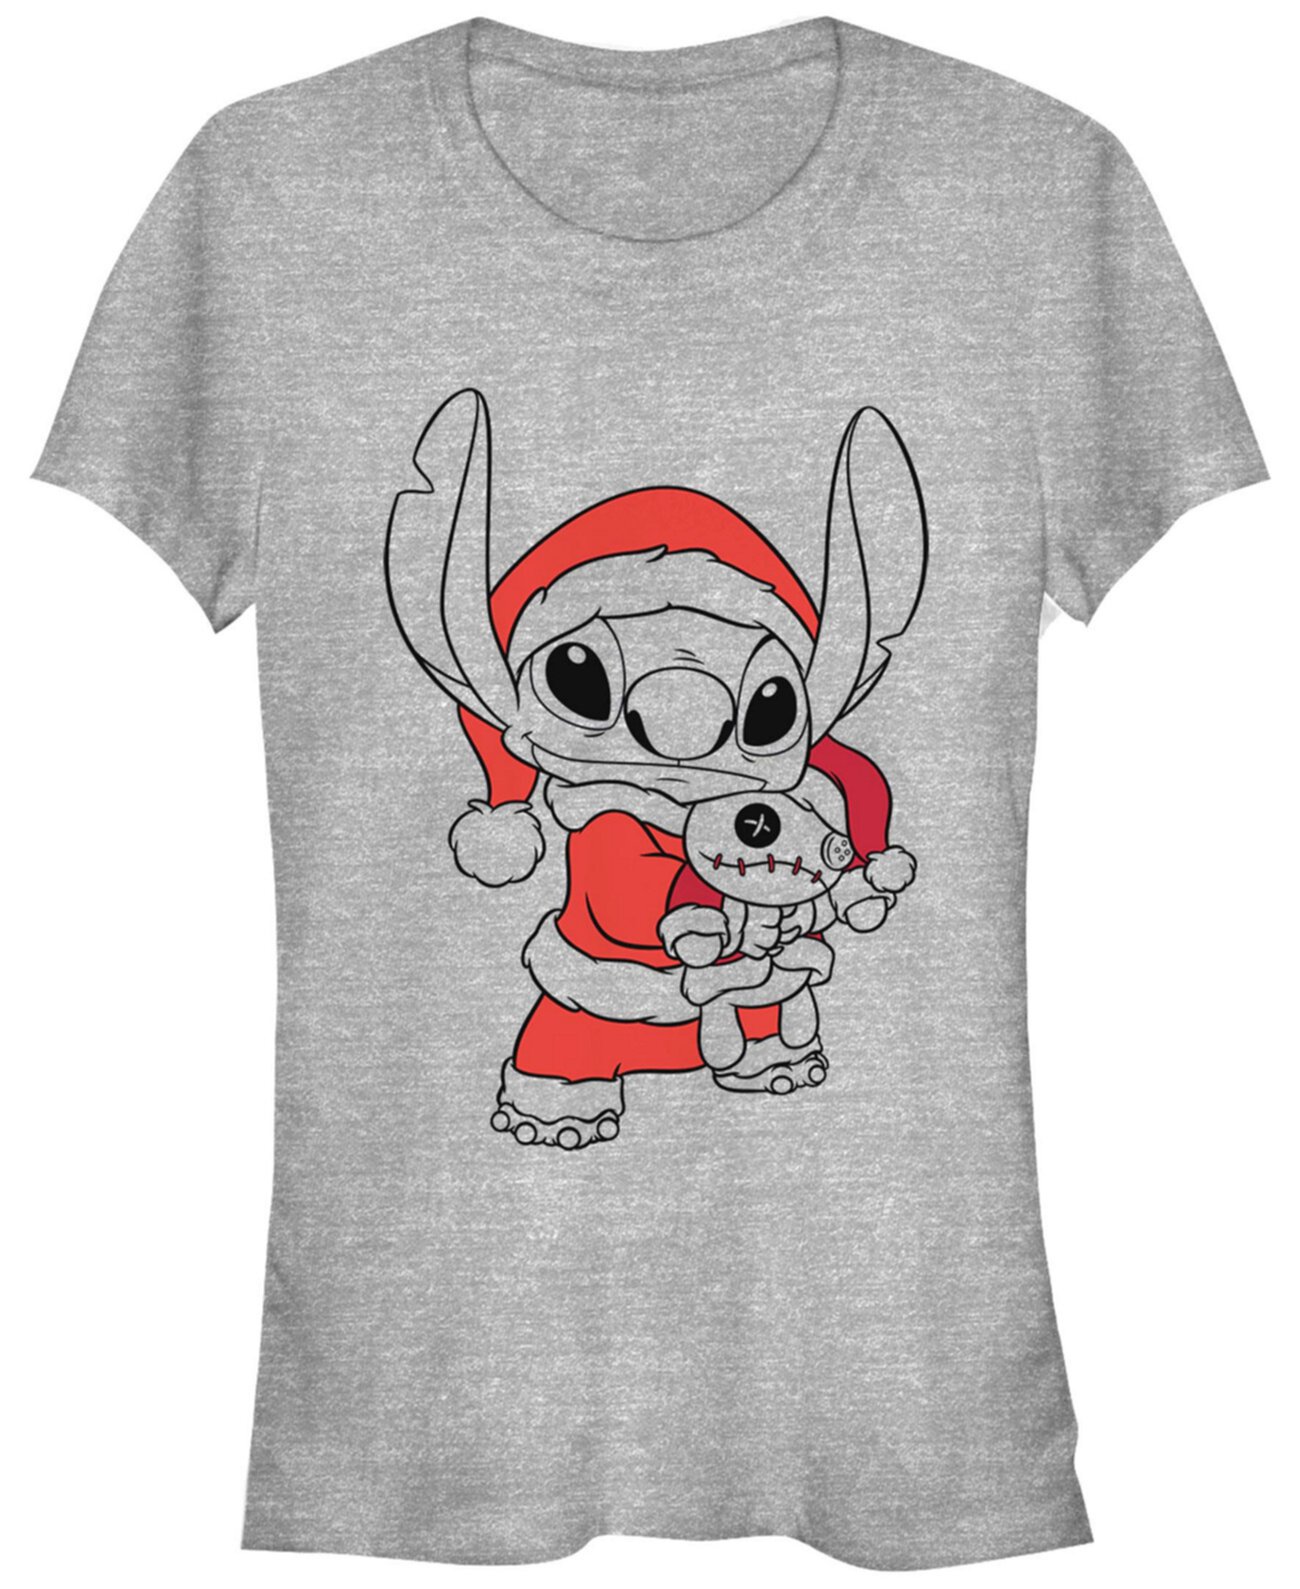 Женская футболка с короткими рукавами и принтом Disney Stitch Holiday Fill FIFTH SUN